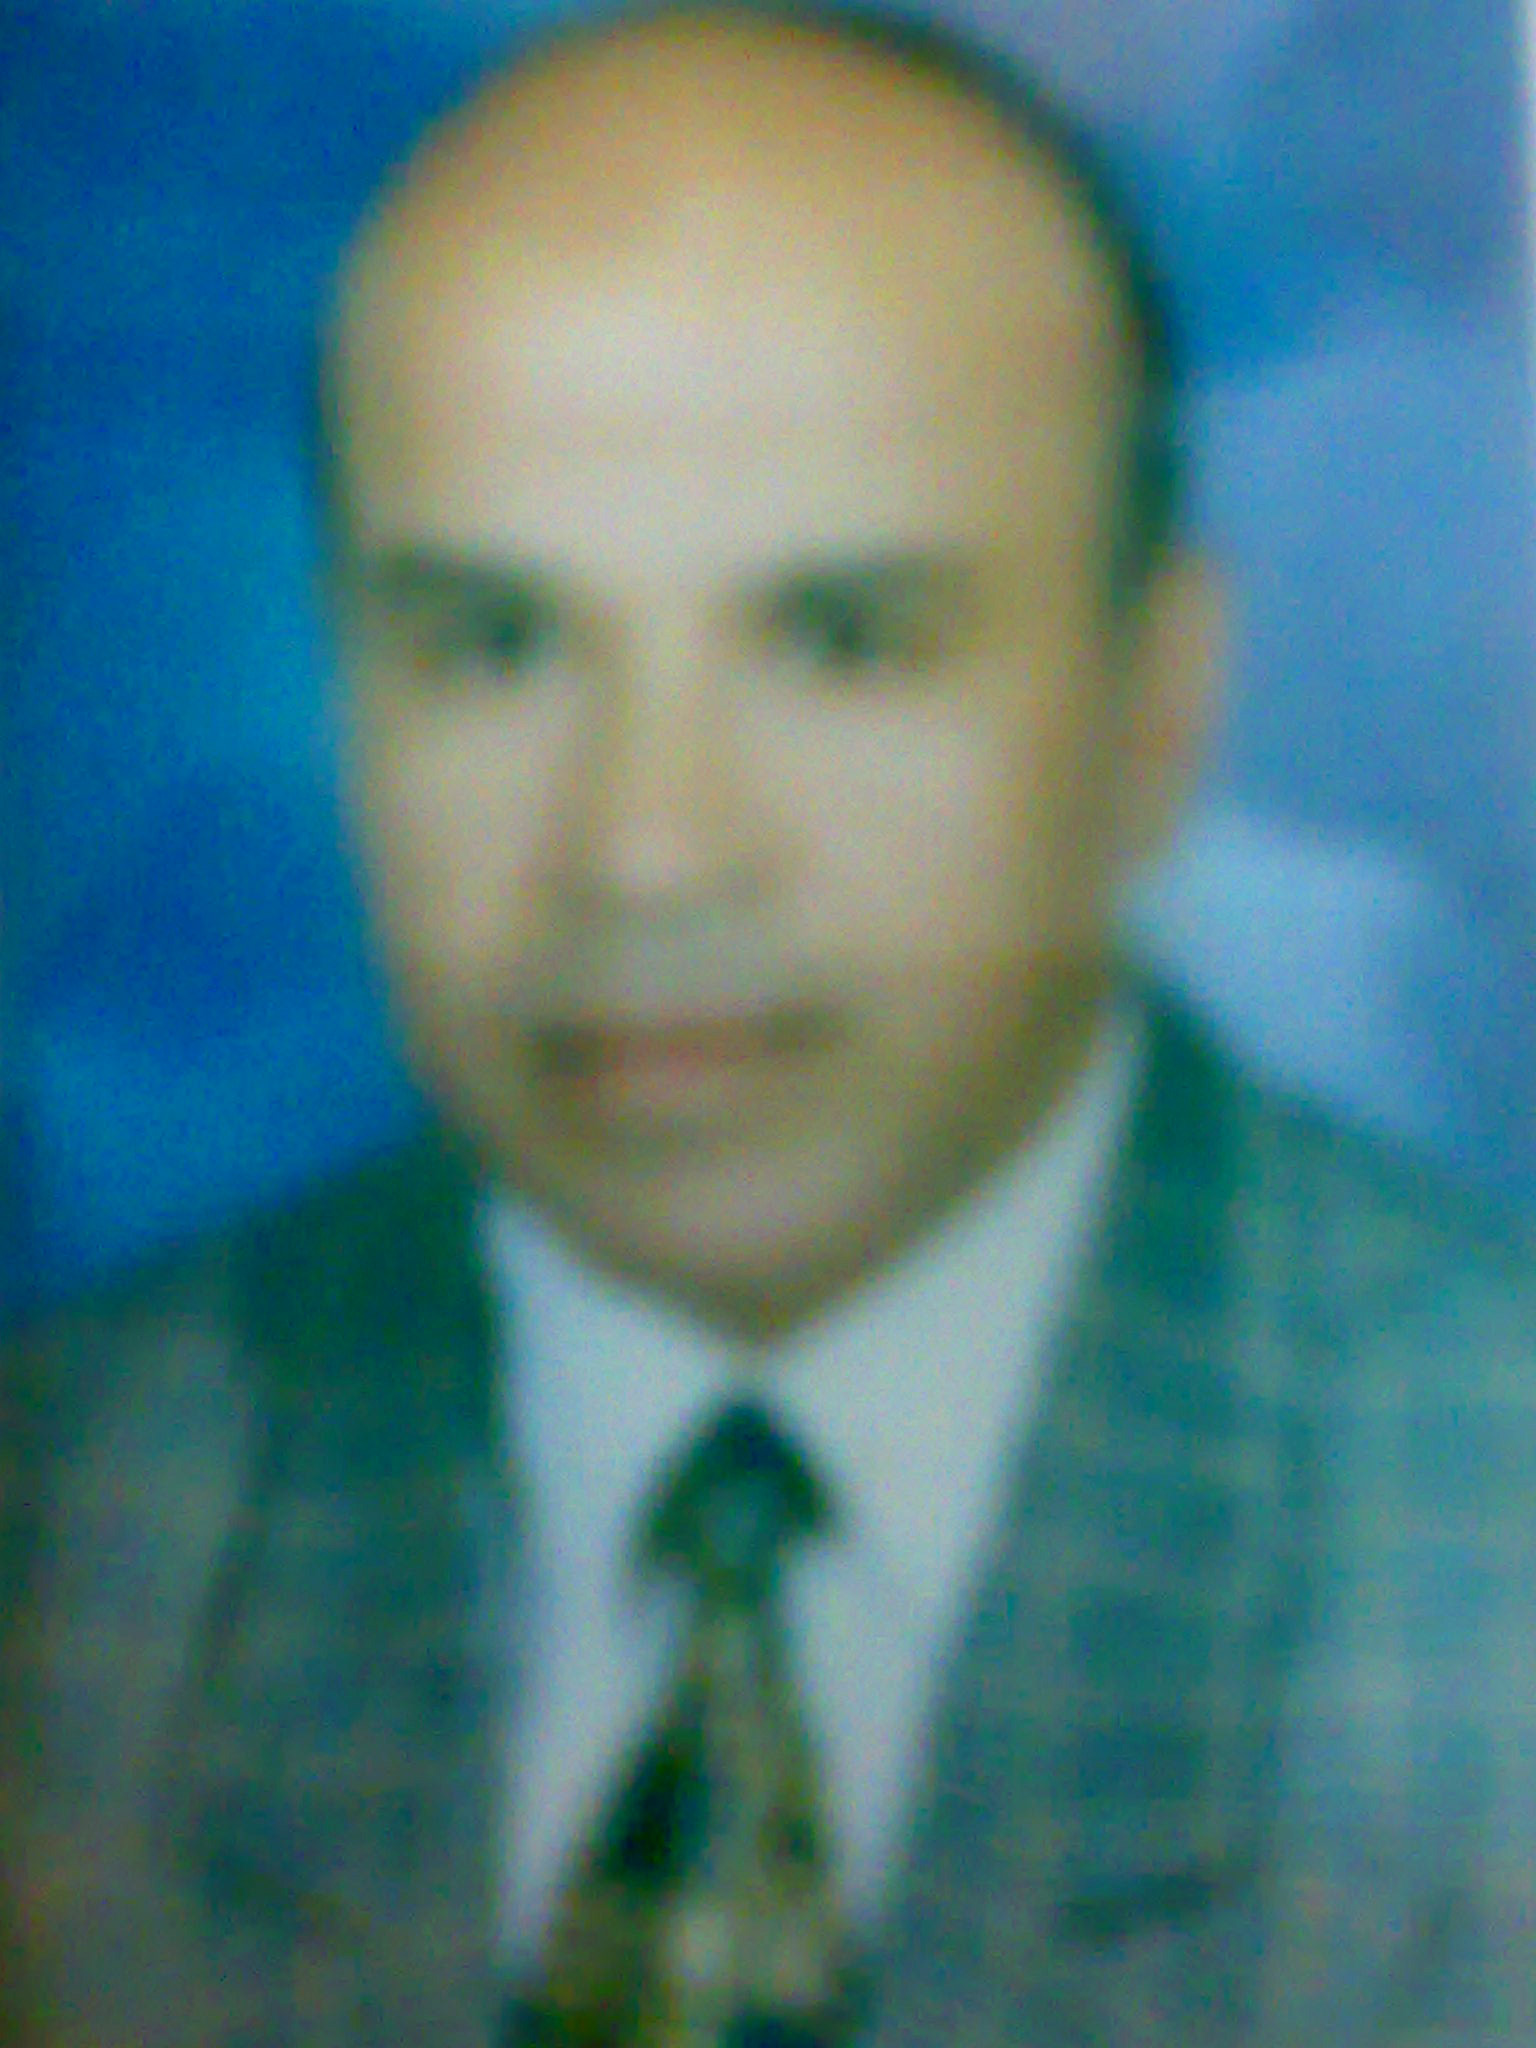 Abd El-Kareem Ibrahim Mohamed El-Sayed